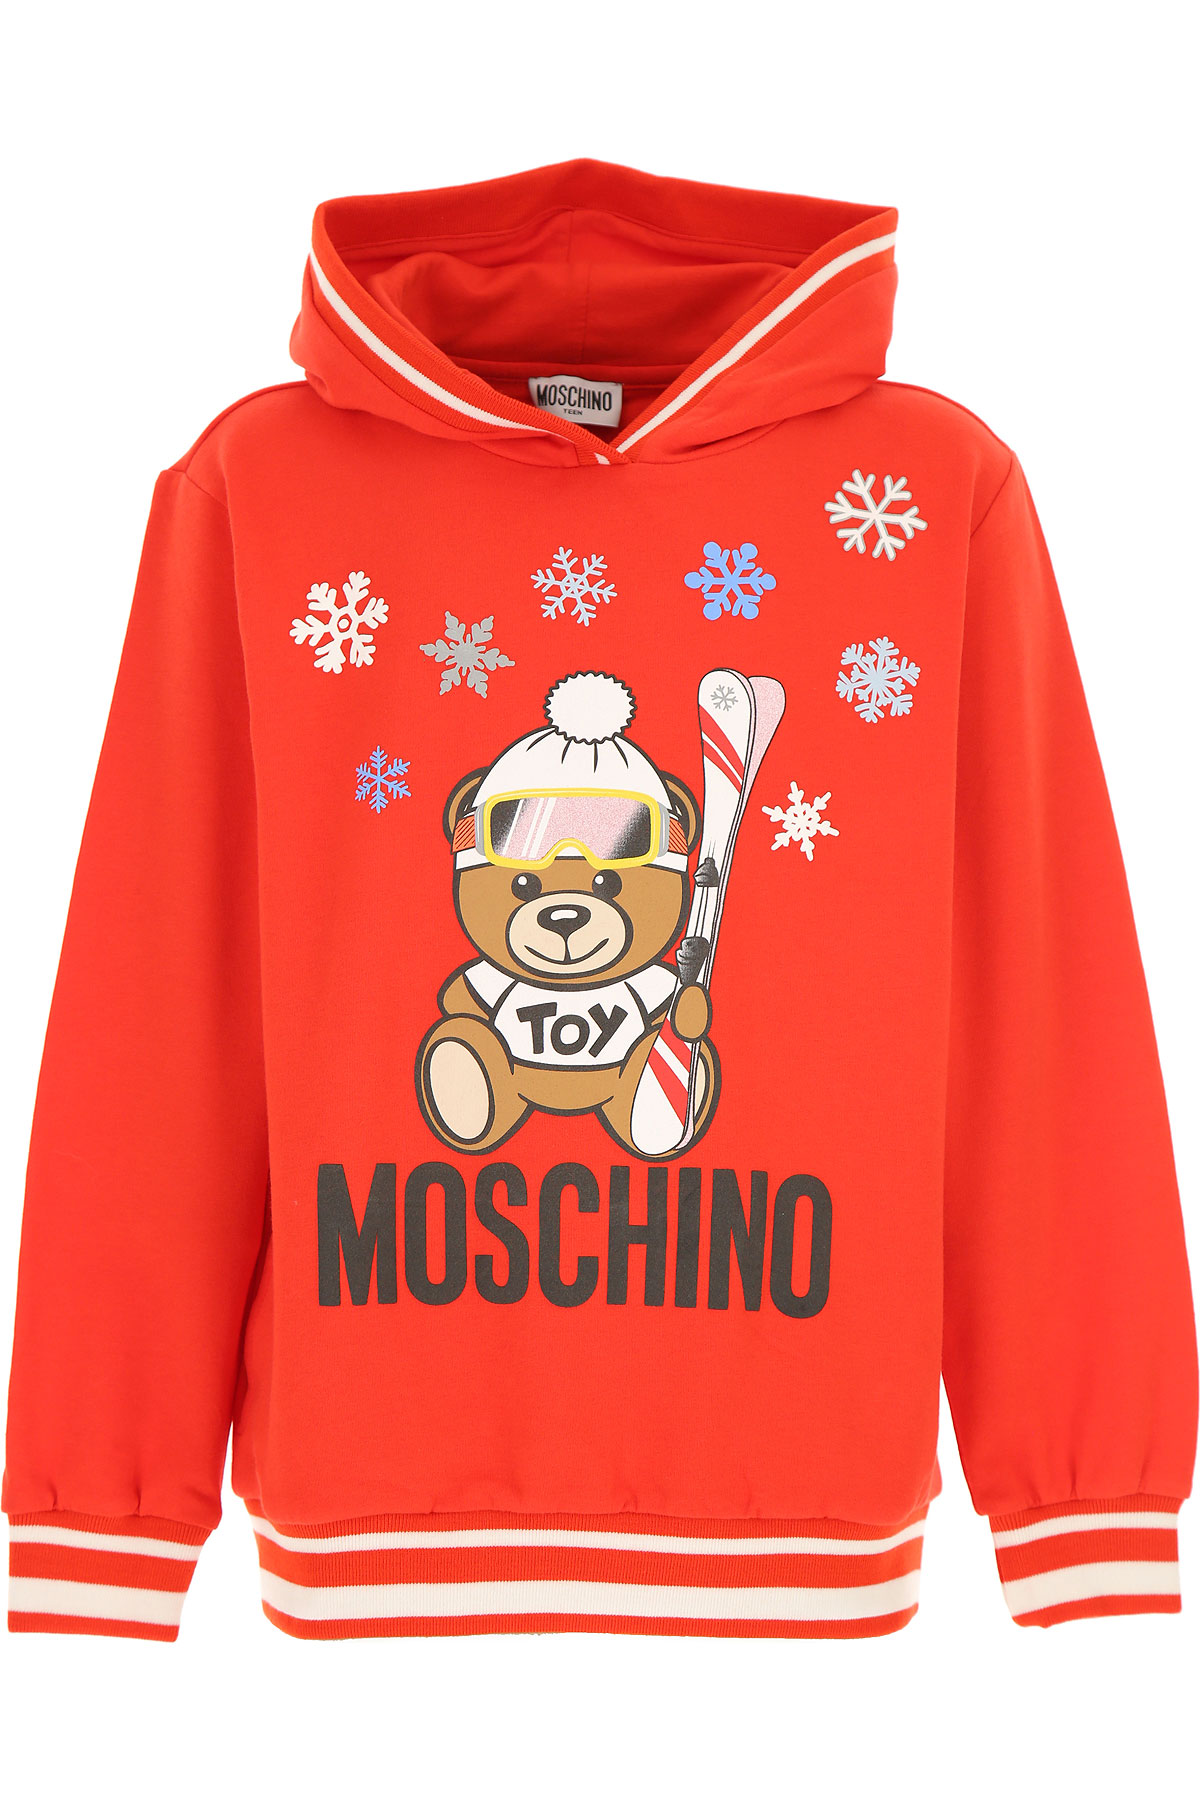 Moschino Kinder Sweatshirt & Kapuzenpullover für Jungen Günstig im Sale, Rot, Baumwolle, 2017, 10Y 14Y 4Y 5Y 8Y